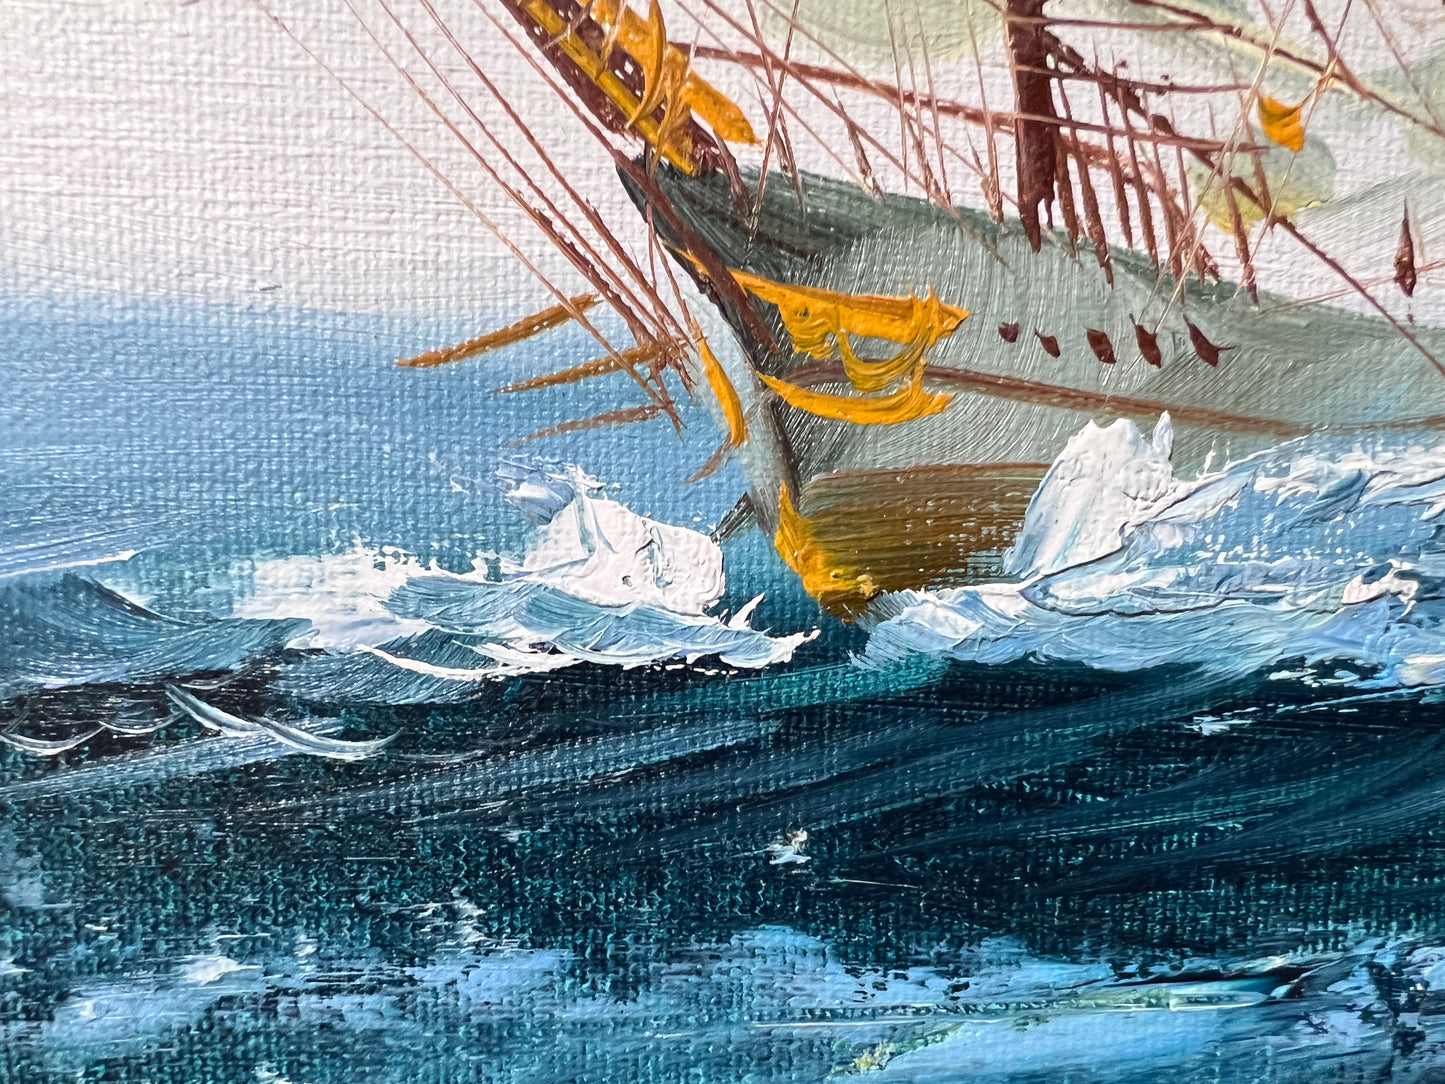 Listed Artist Hewett JACKSON 1914-2007, seascape Original oil painting on canvas